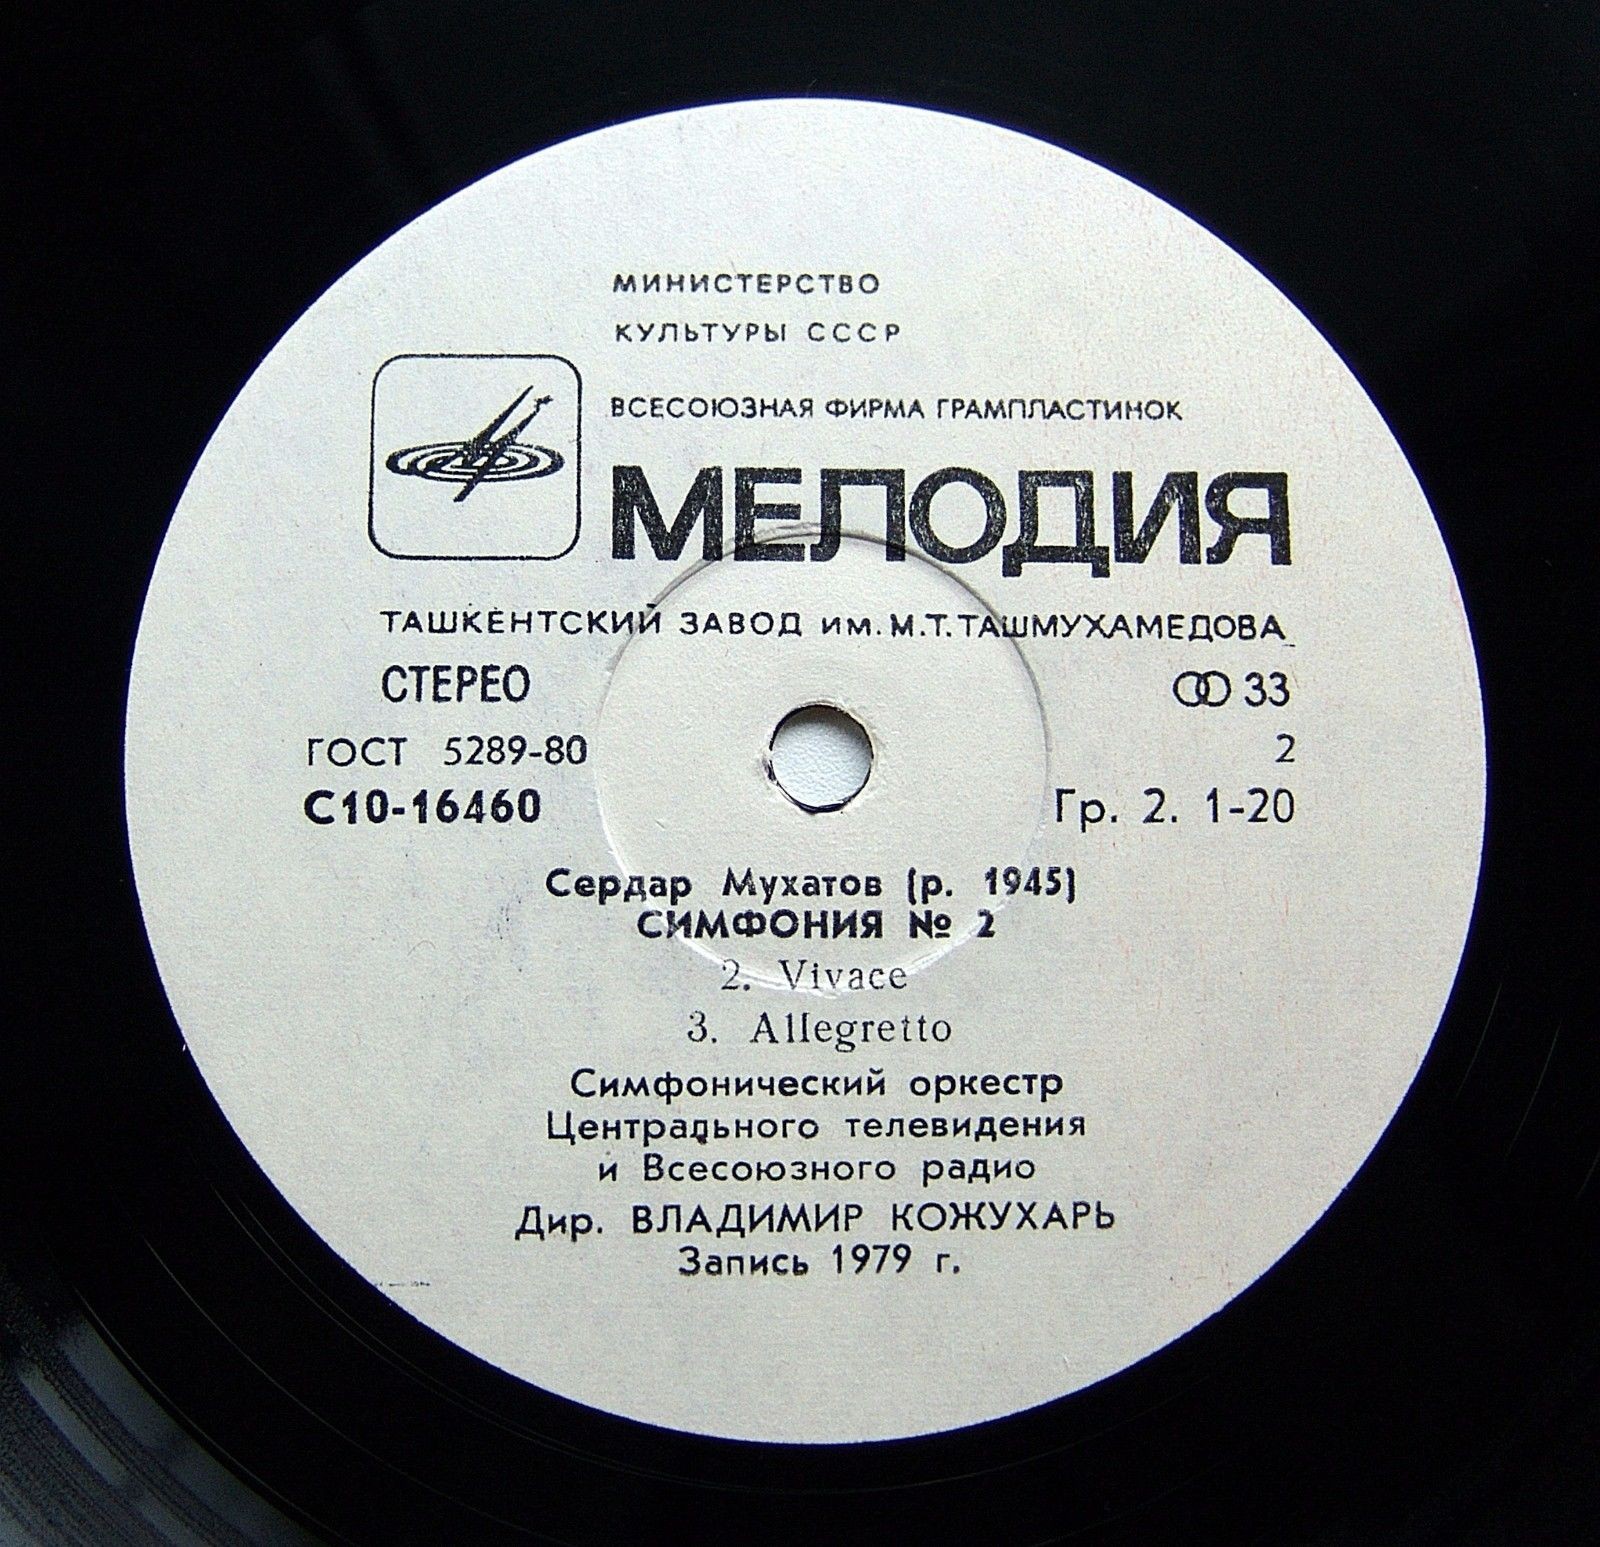 С. МУХАТОВ (1945): Симфония № 2